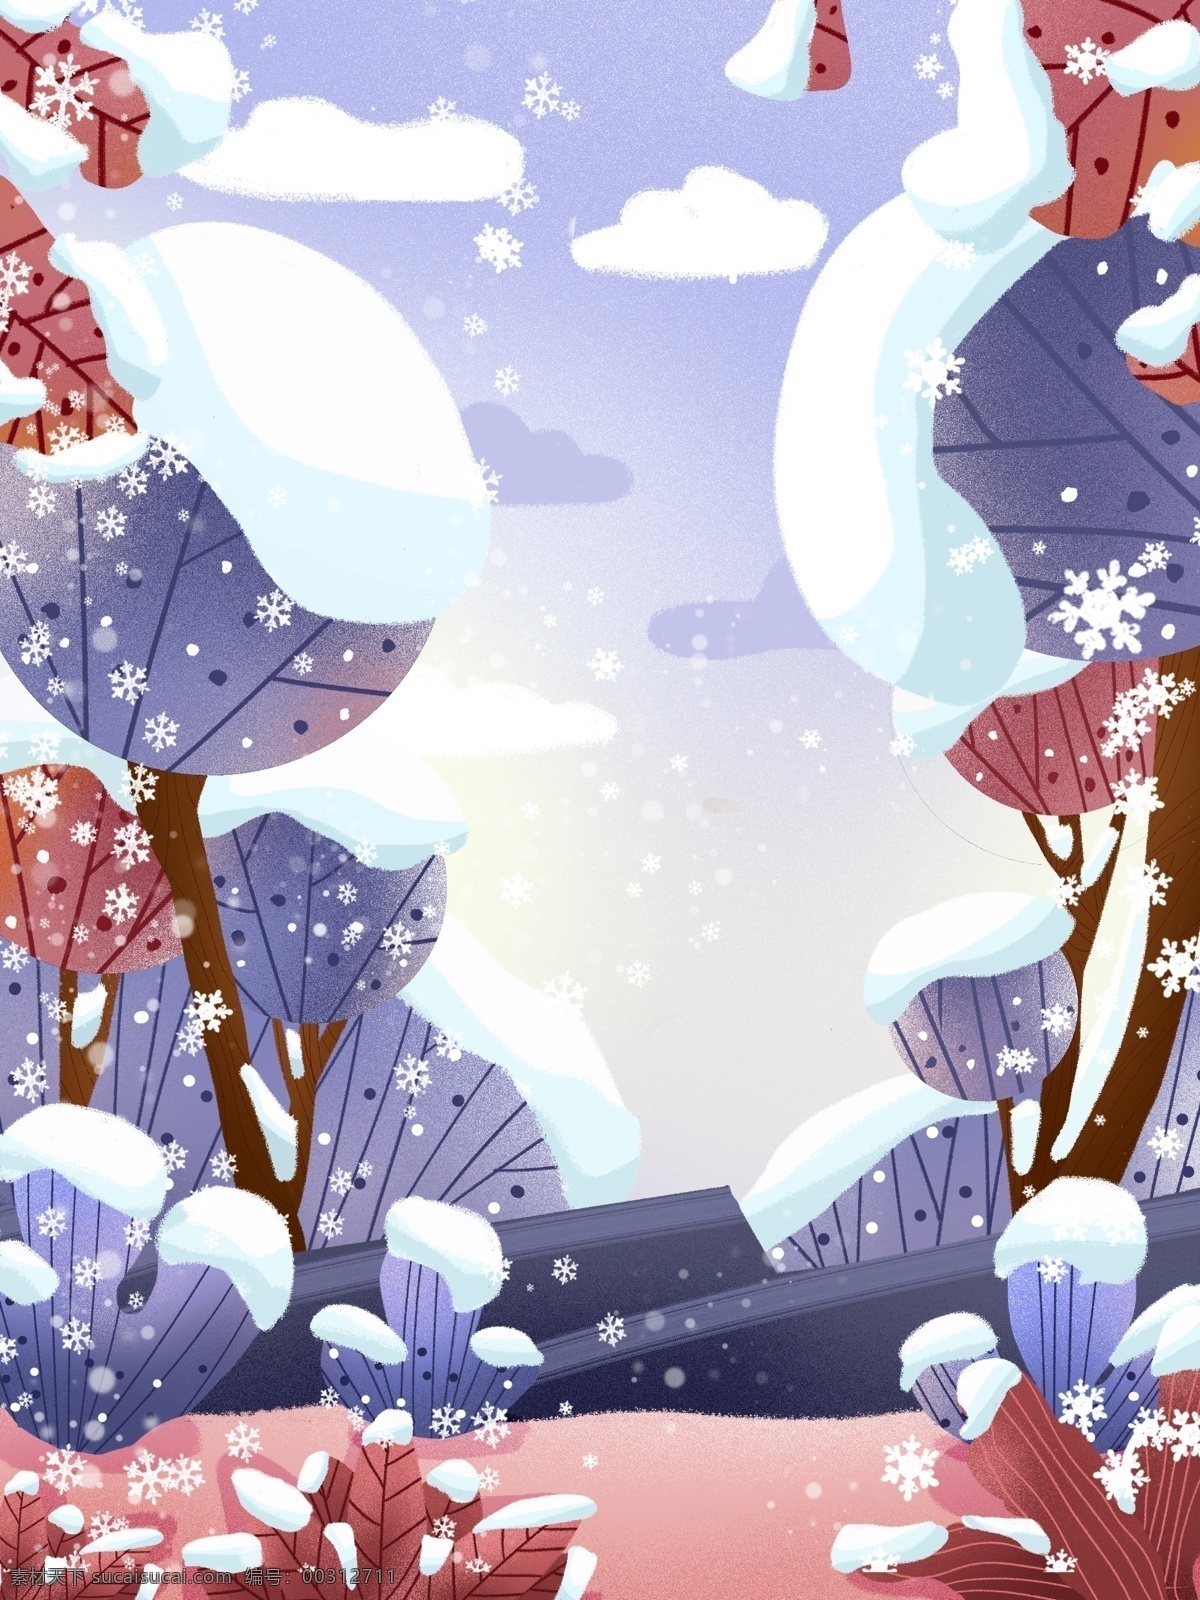 传统 冬季 节气 雪景 背景 大雪 大雪背景 下雪 冬季素材 背景设计 植物